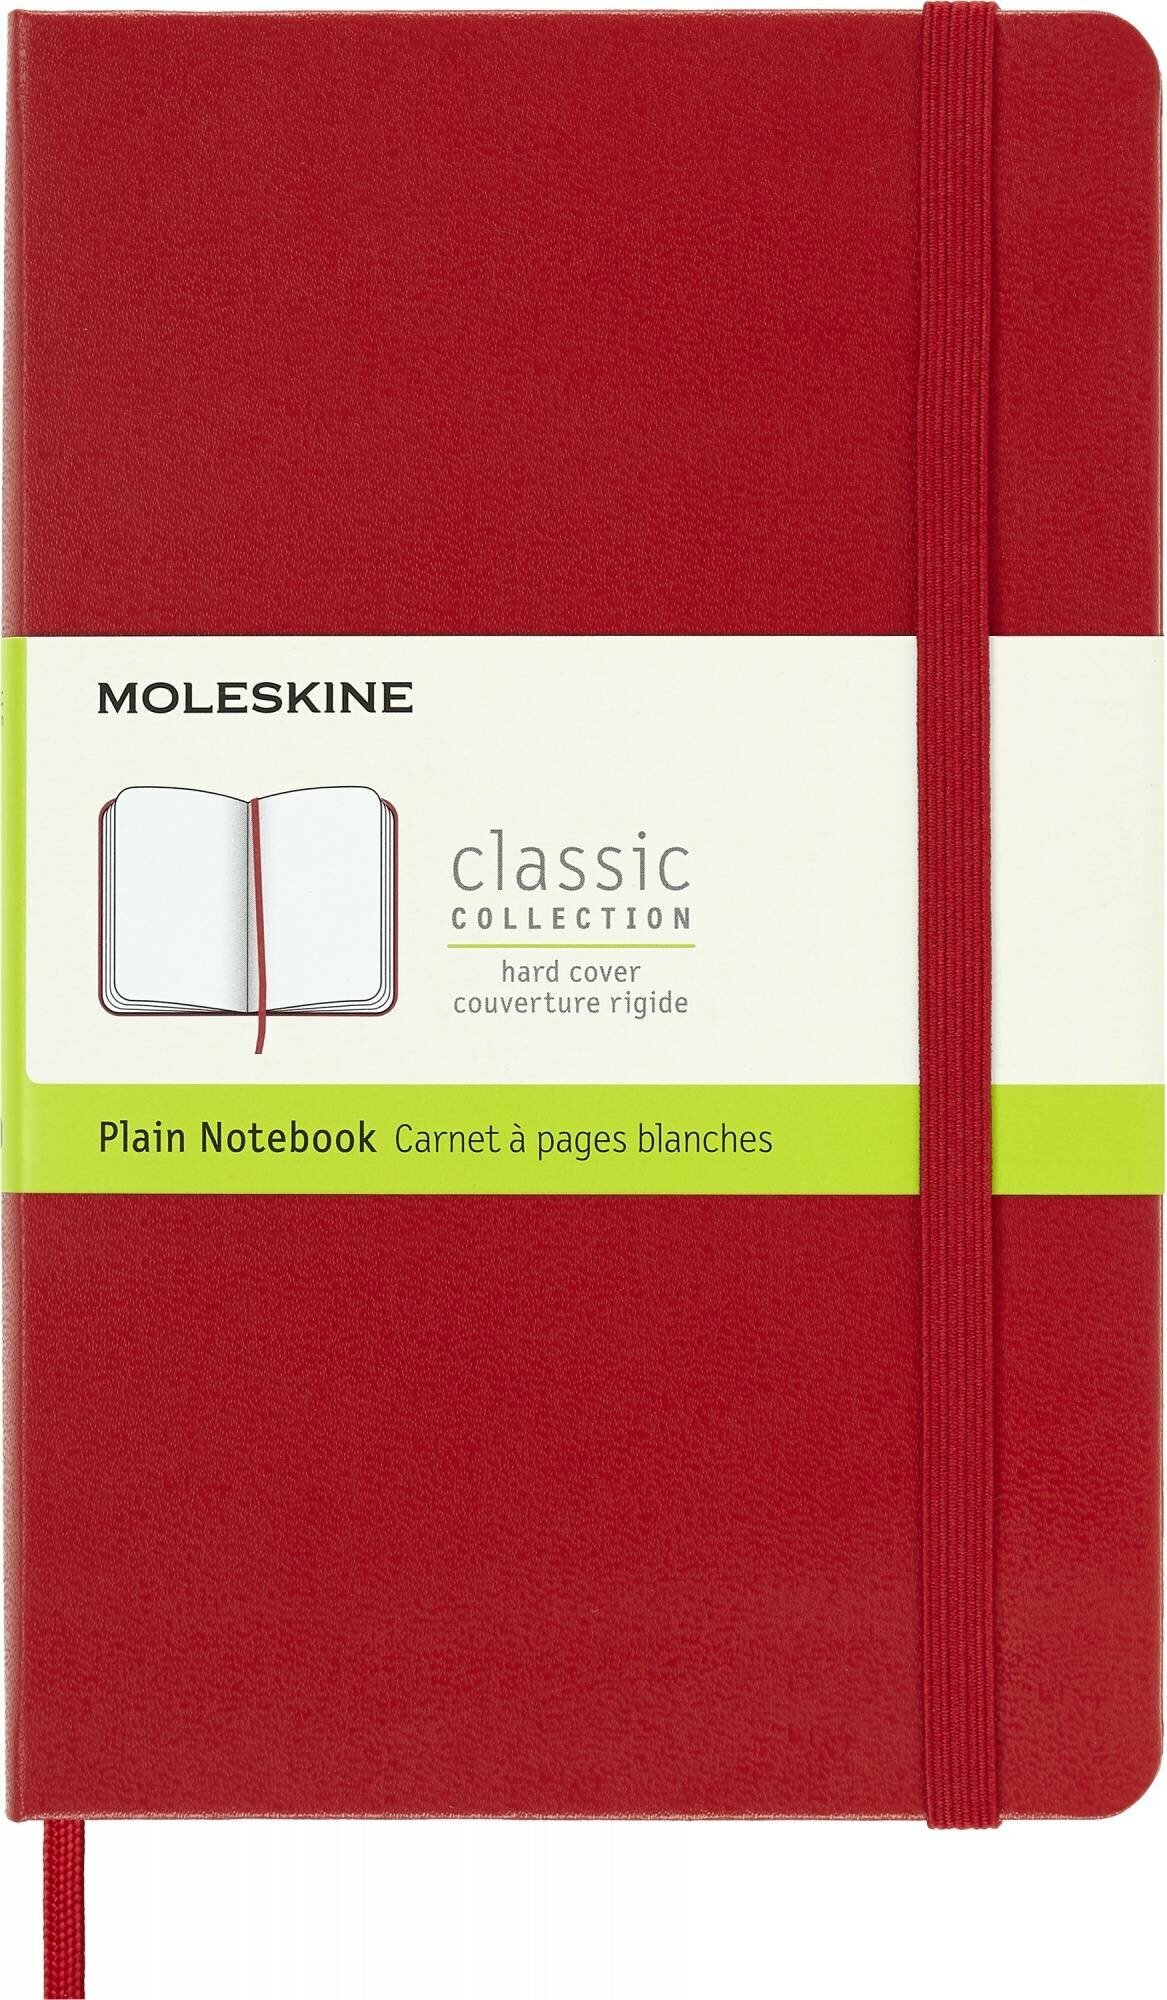 Блокнот Moleskine CLASSIC Medium 115x180мм 240стр. нелинованный твердая обложка красный 6 шт./кор. - фото №5